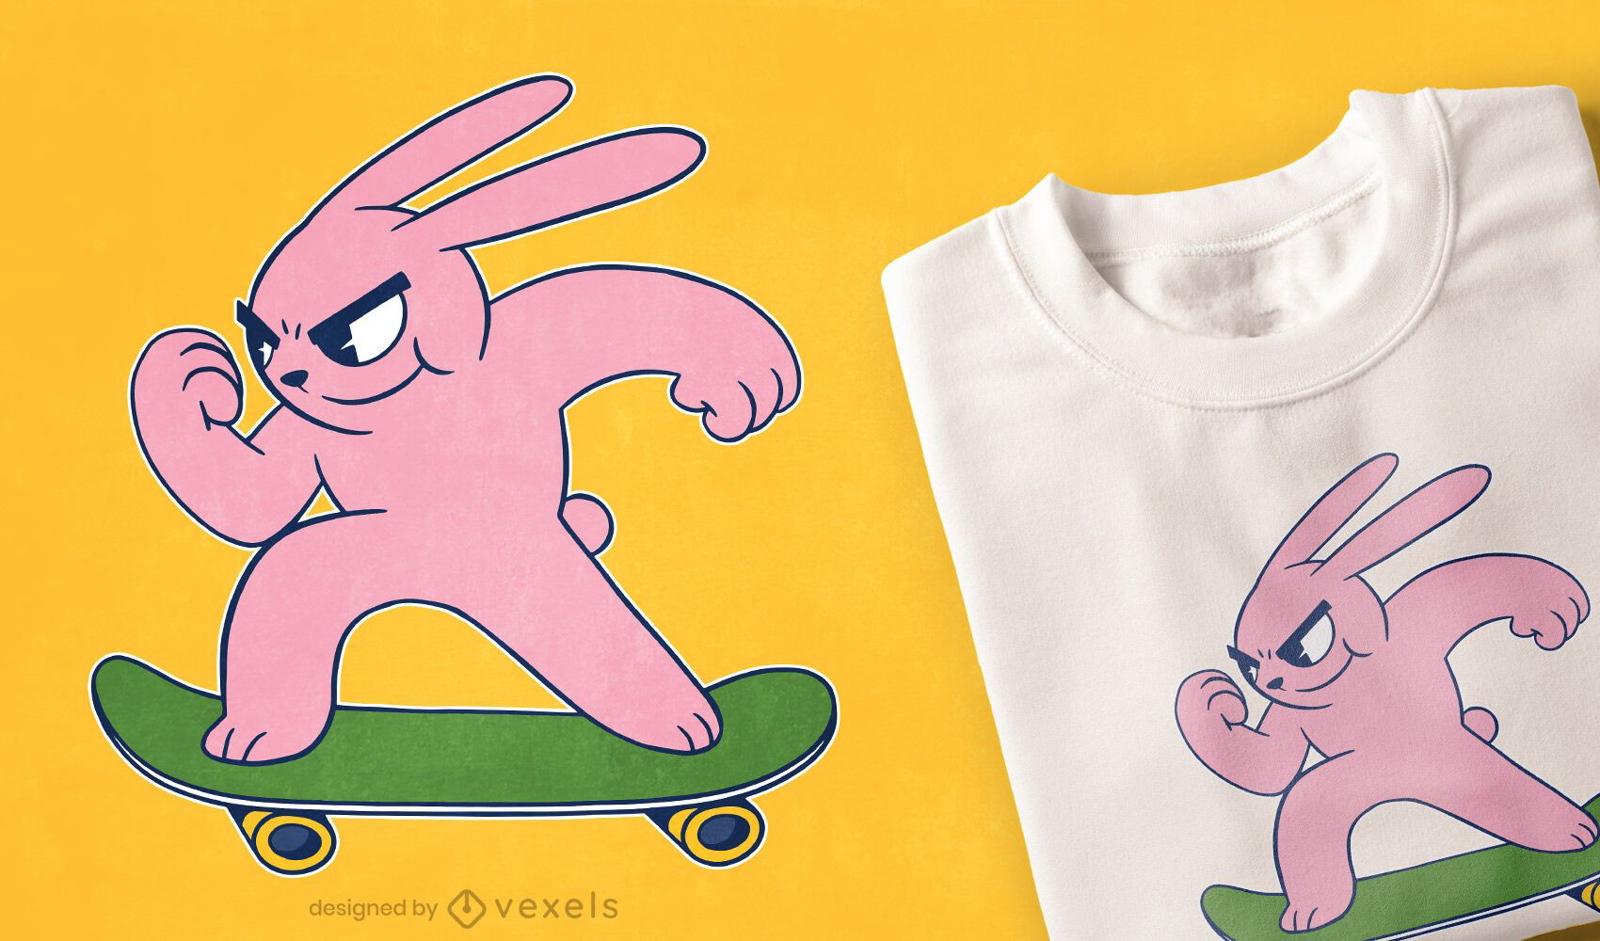 Skater bunny t-shirt design